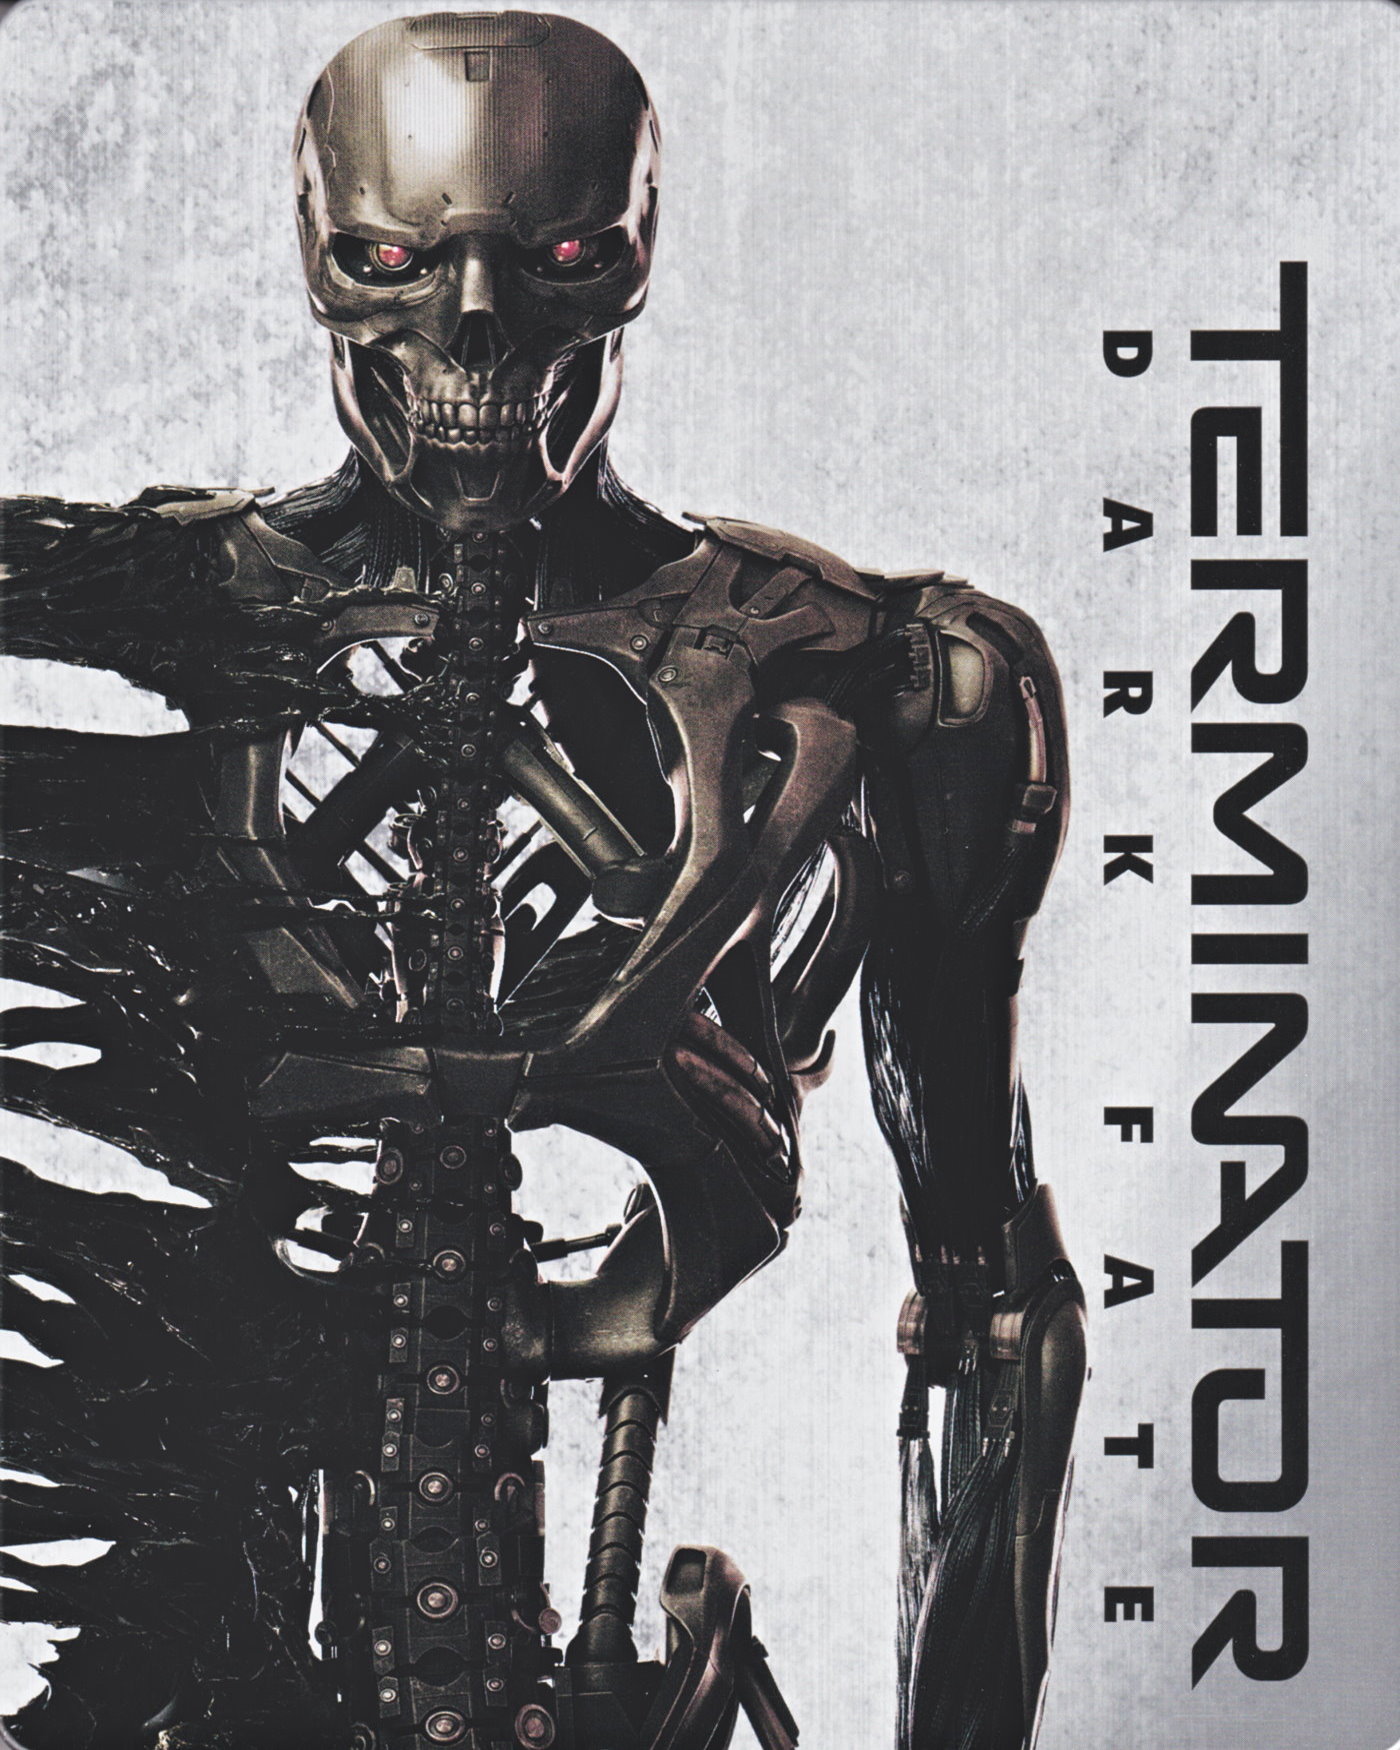 Cover - Terminator - Dark Fate.jpg